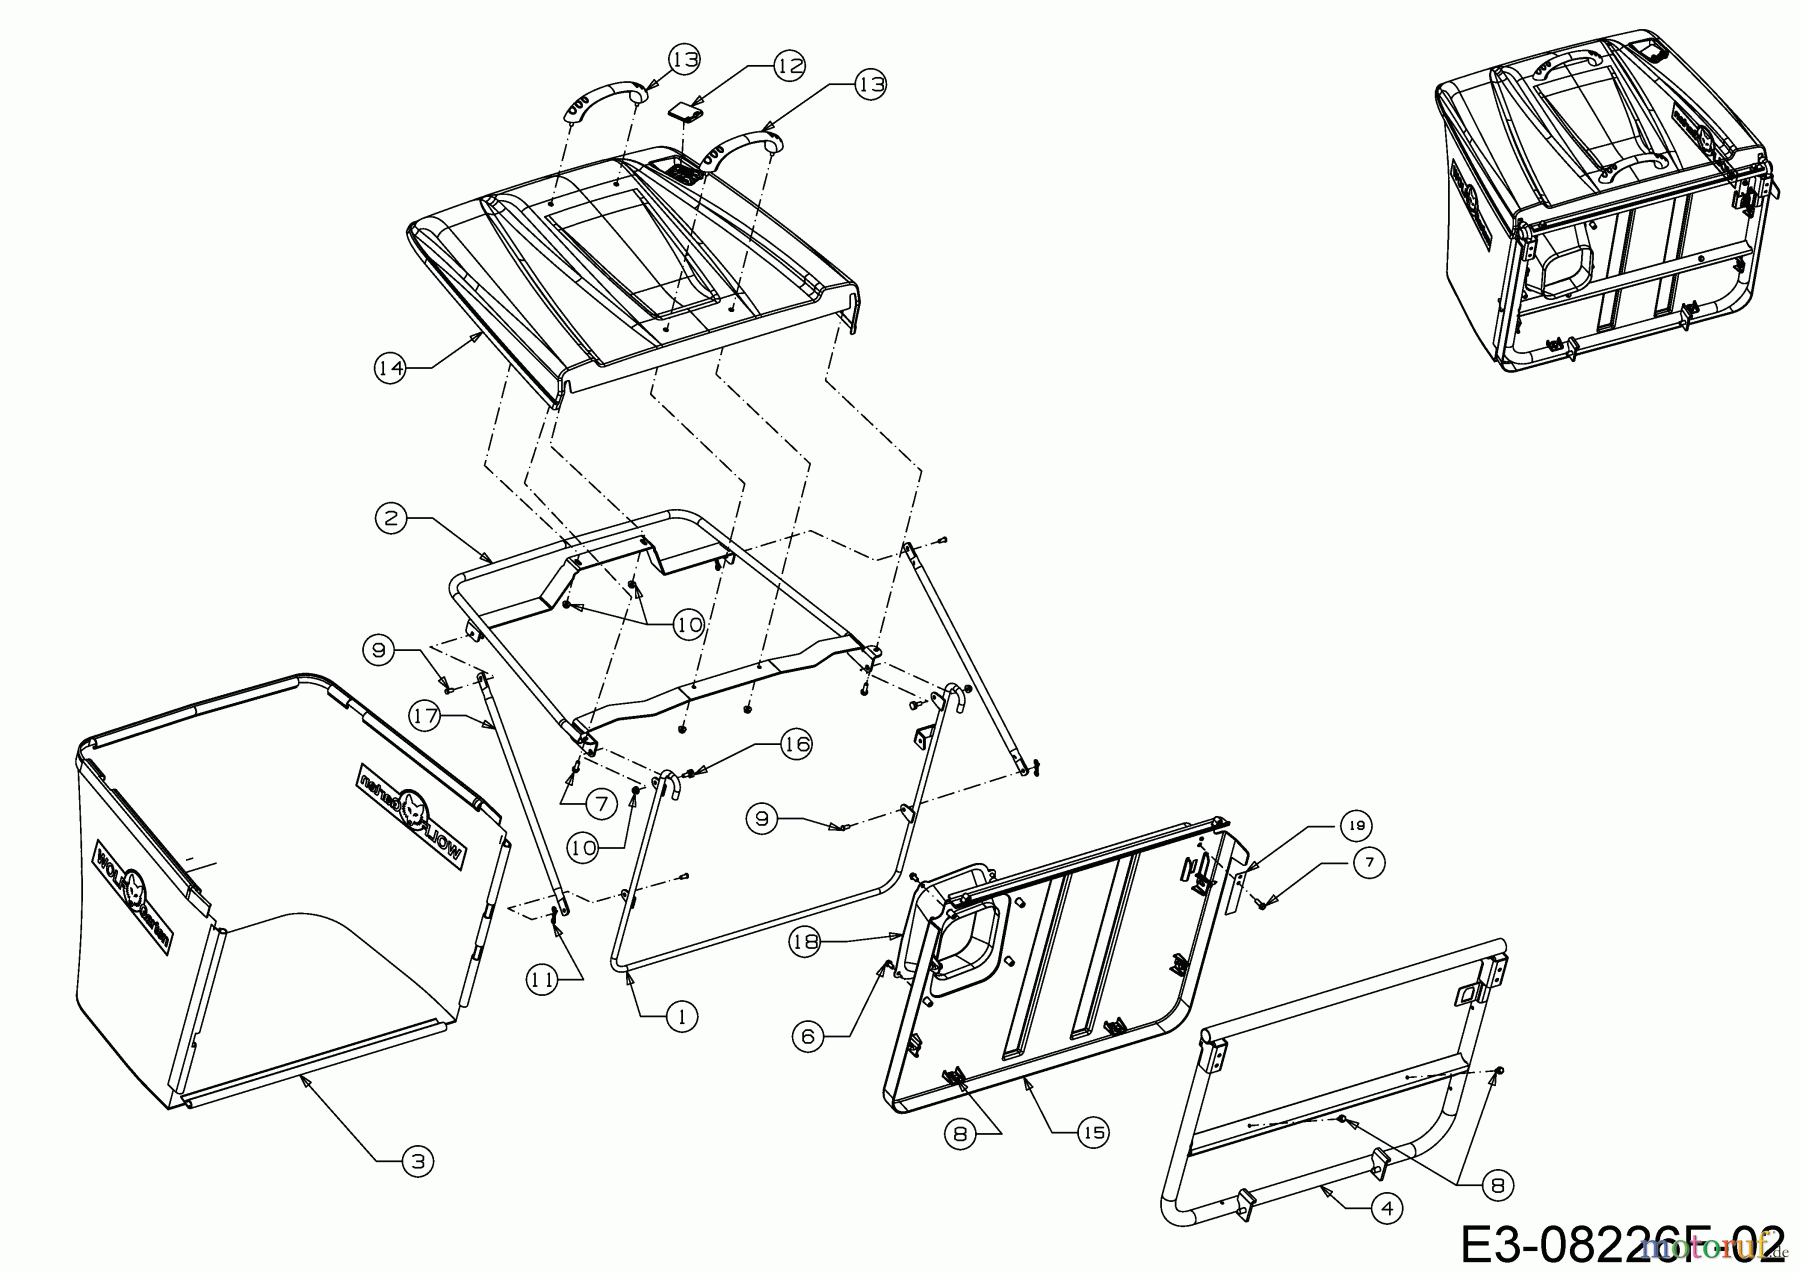  WOLF-Garten Expert Rasentraktoren Scooter Pro 13C226HD650  (2018) Grasfangeinrichtung